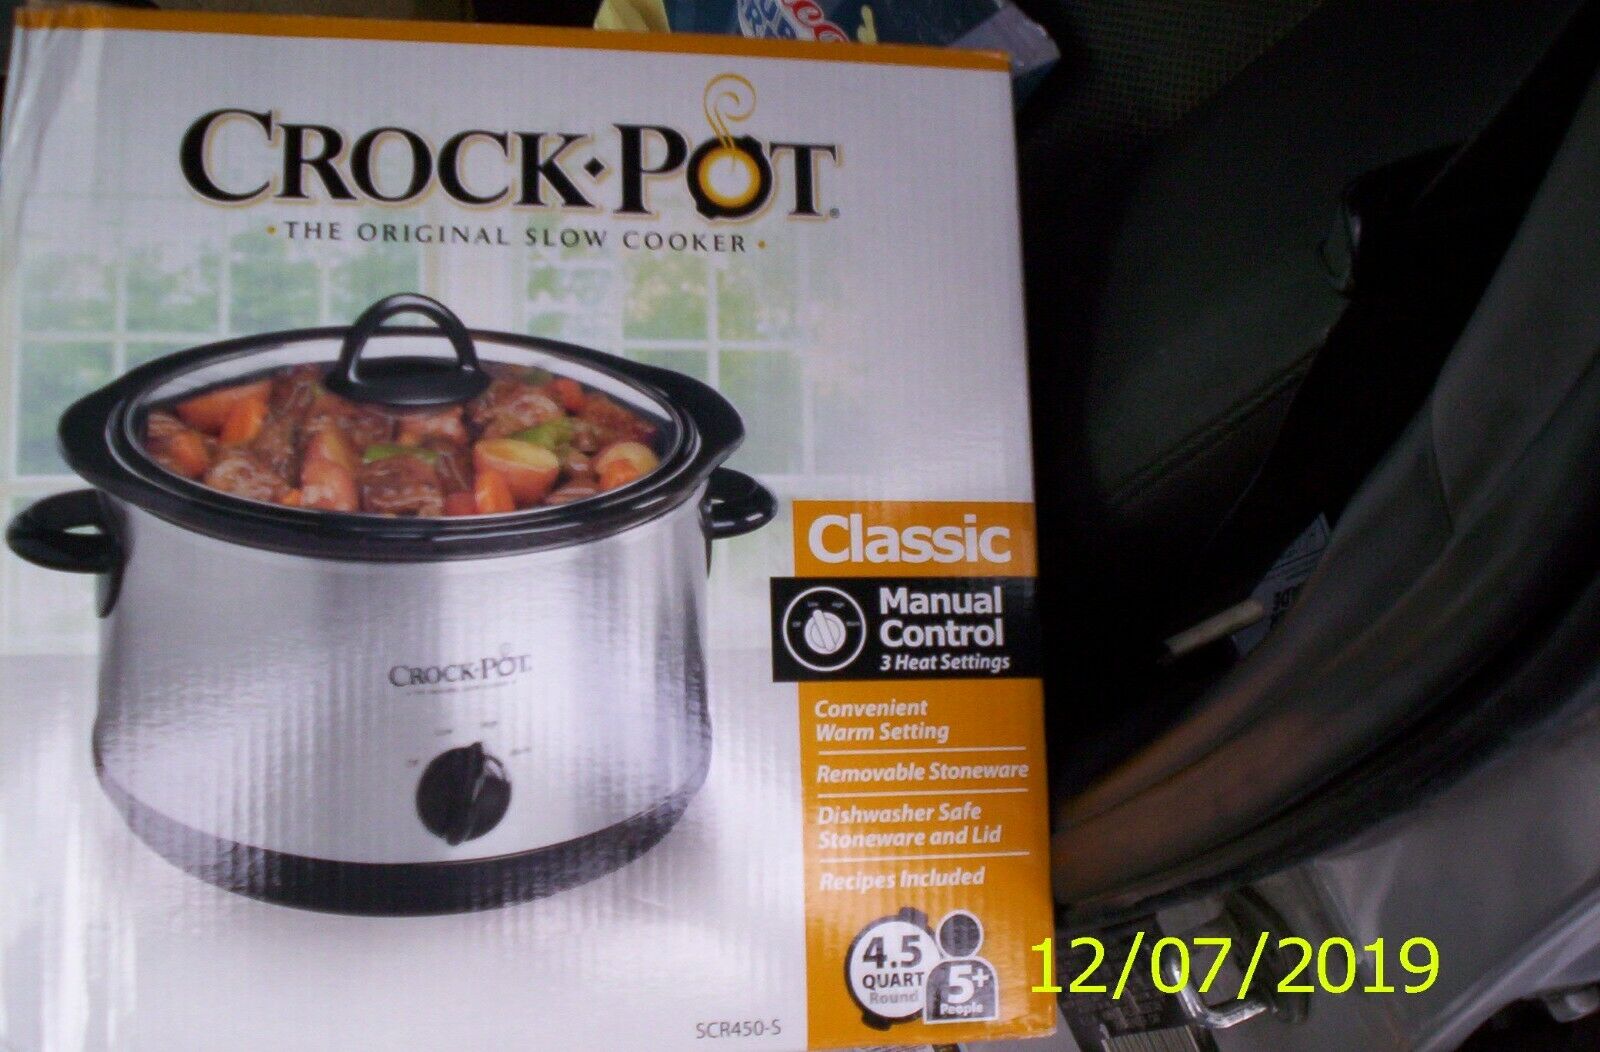 New! Crock-Pot * The Original Slow Cooker * Classic 4.5Qt Model SCR450-S